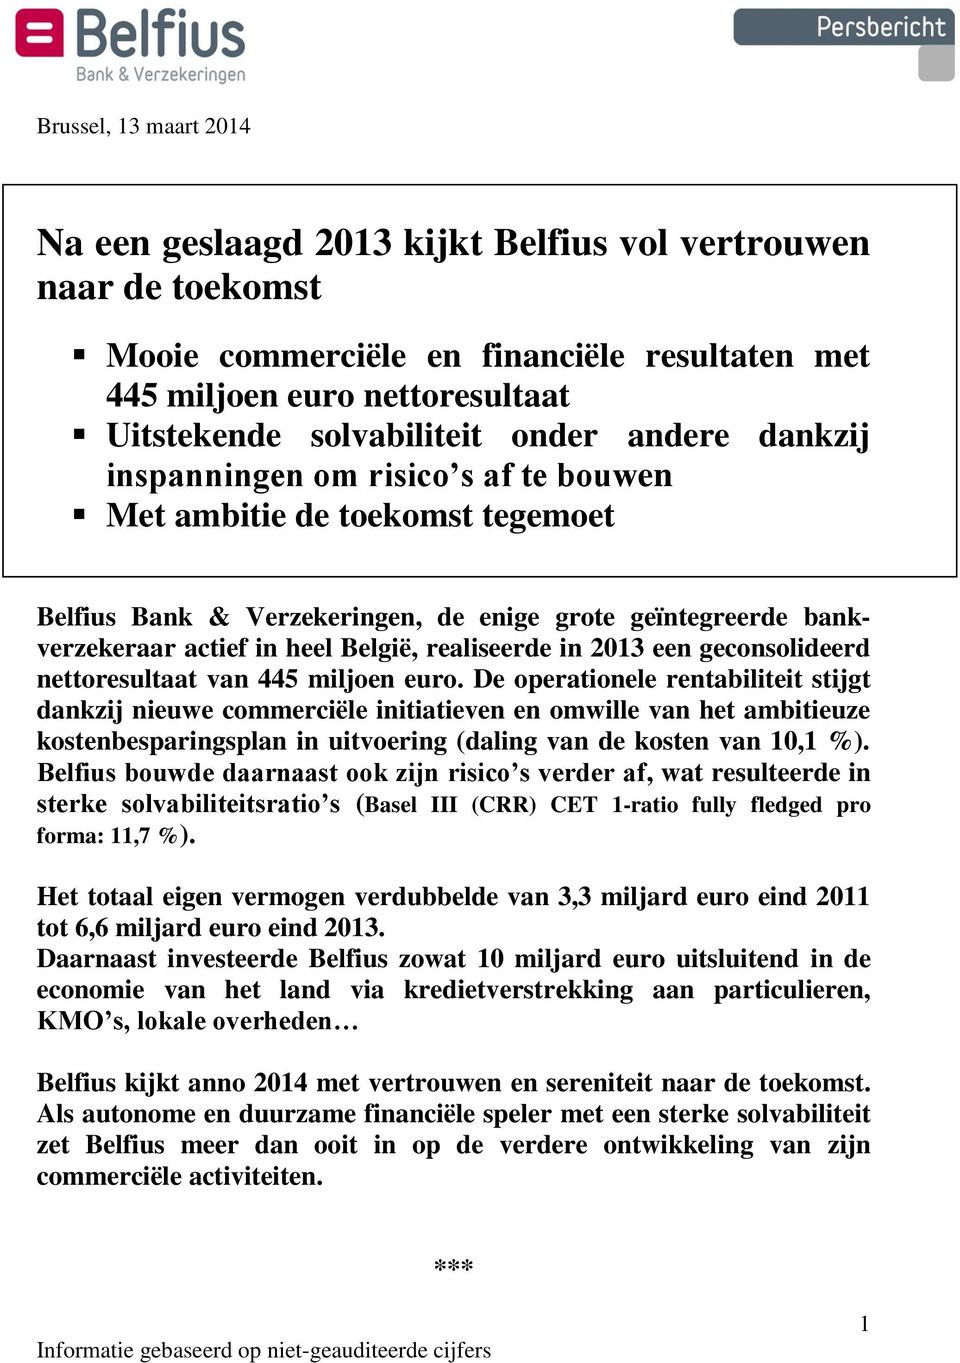 realiseerde in 2013 een geconsolideerd nettoresultaat van 445 miljoen euro.